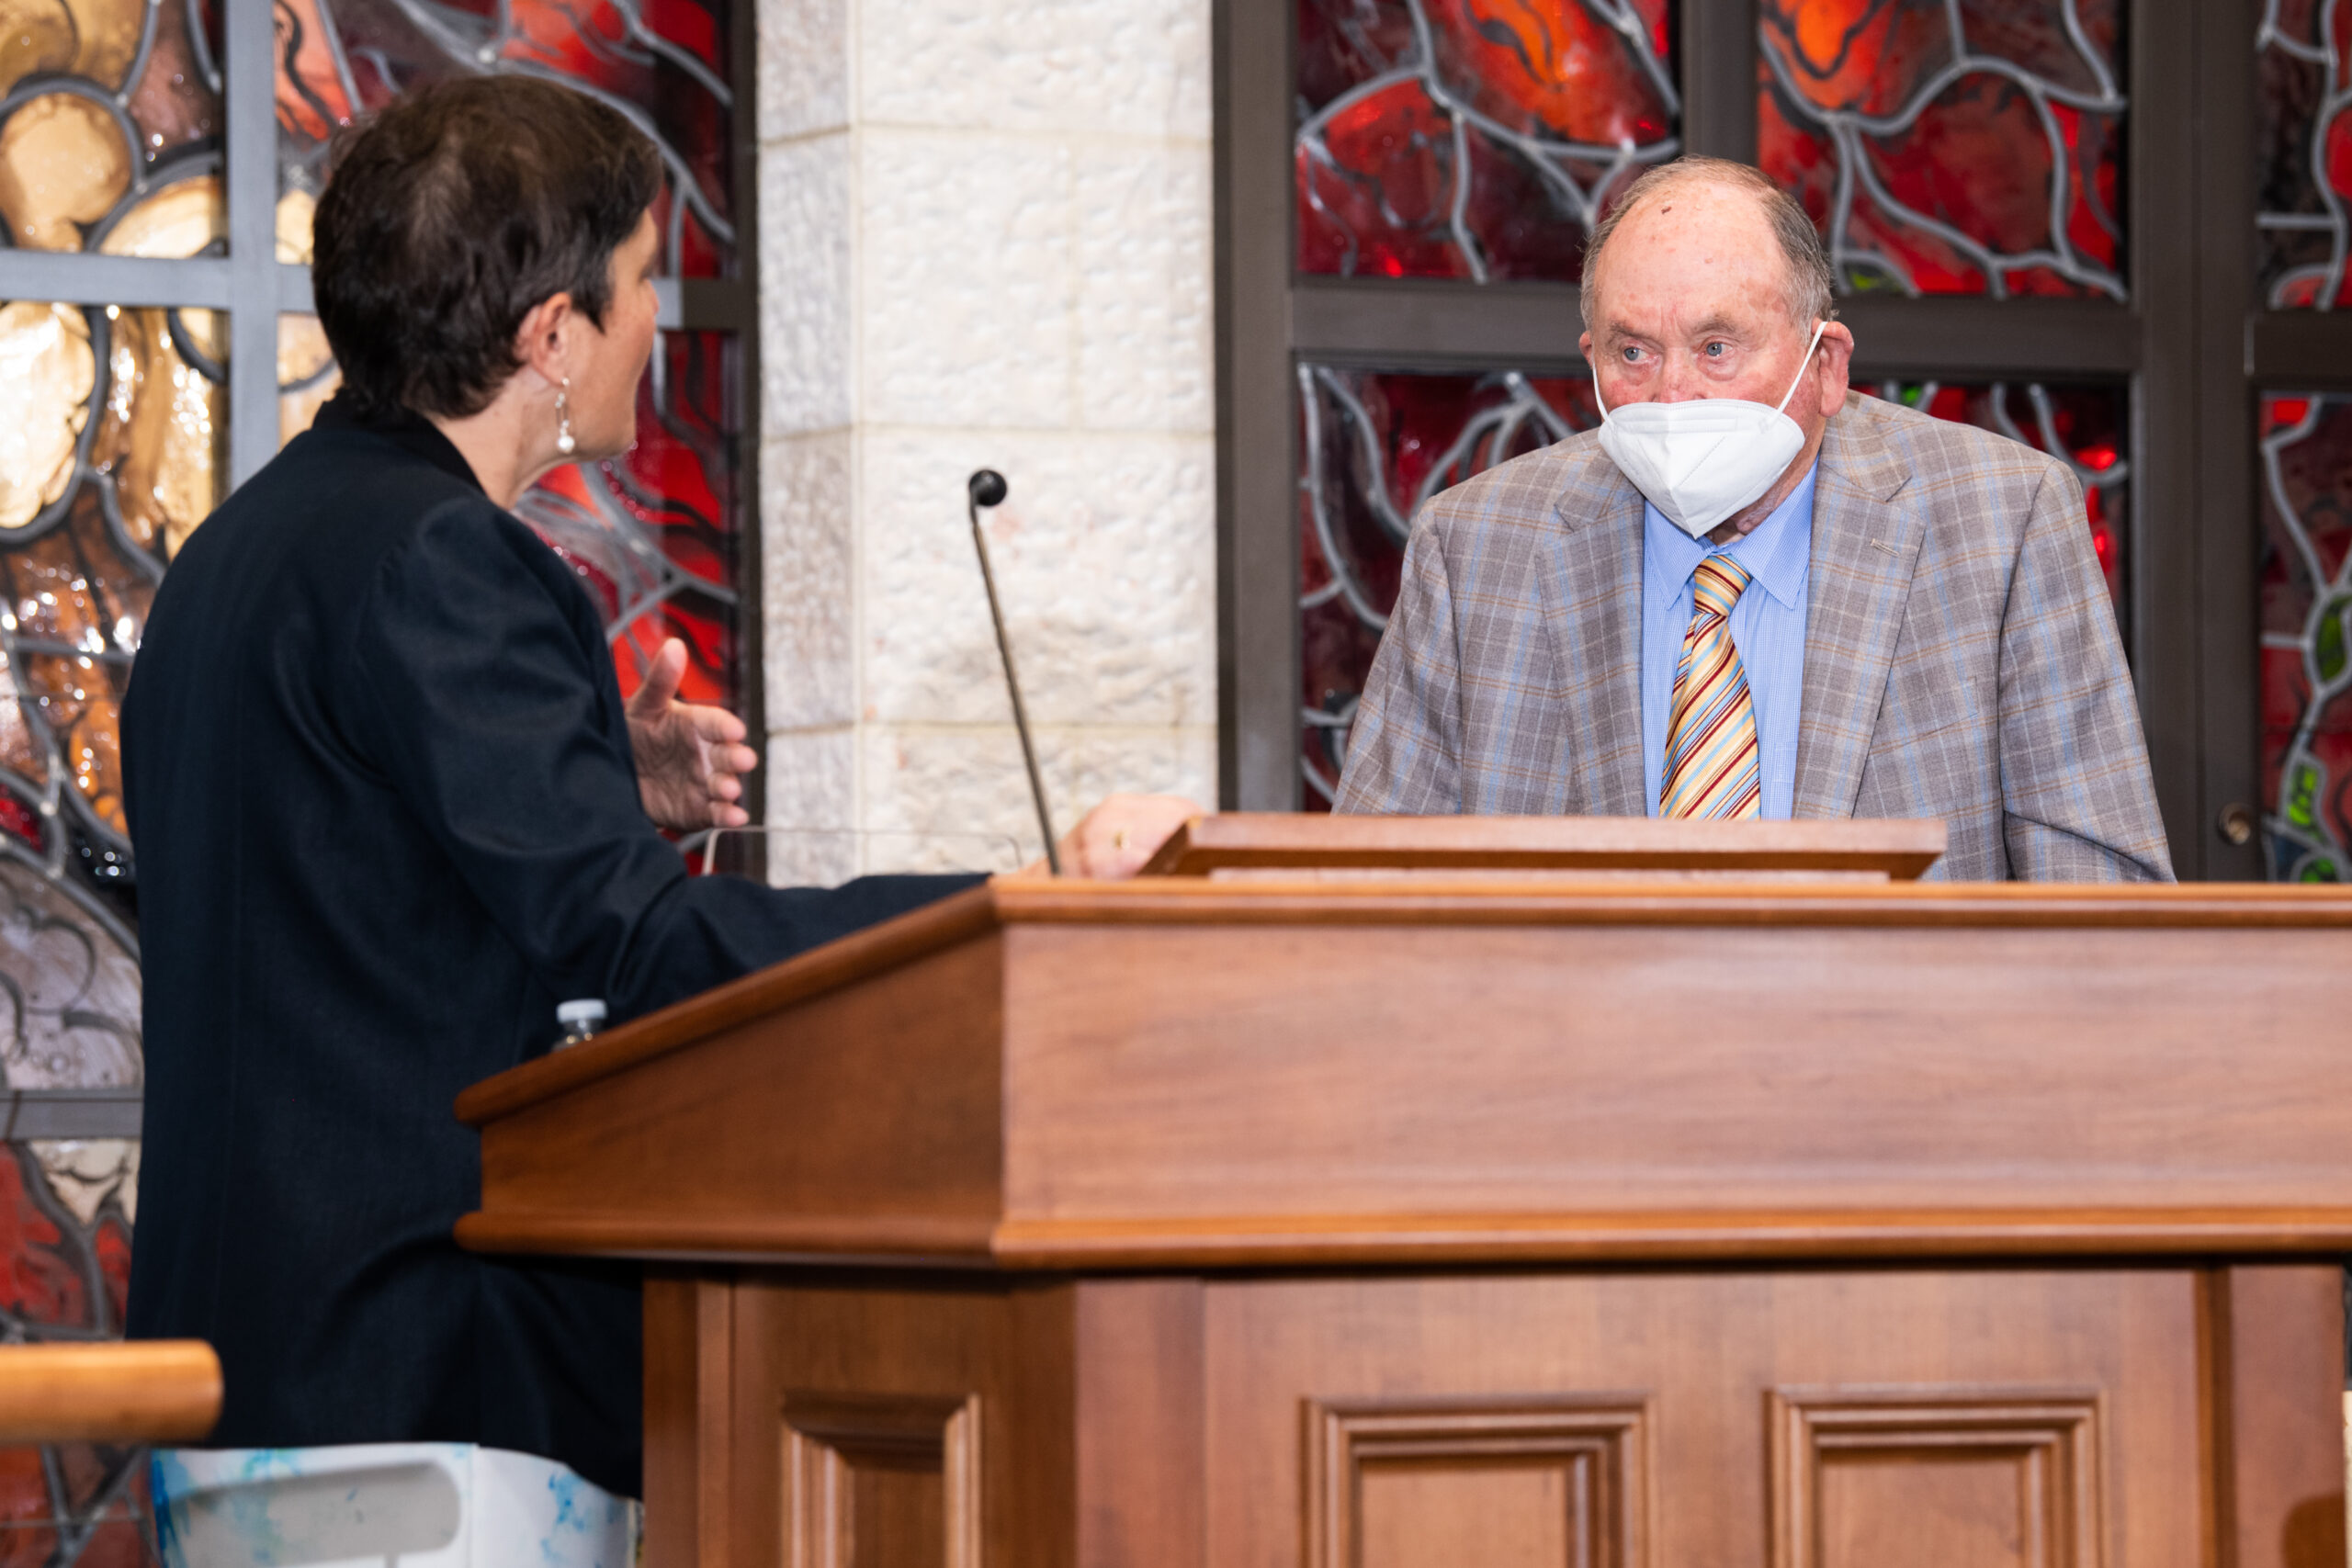 Rabbi Deborah Waxman shares the bimah with Donald Shapiro, who is wearing a mask. 